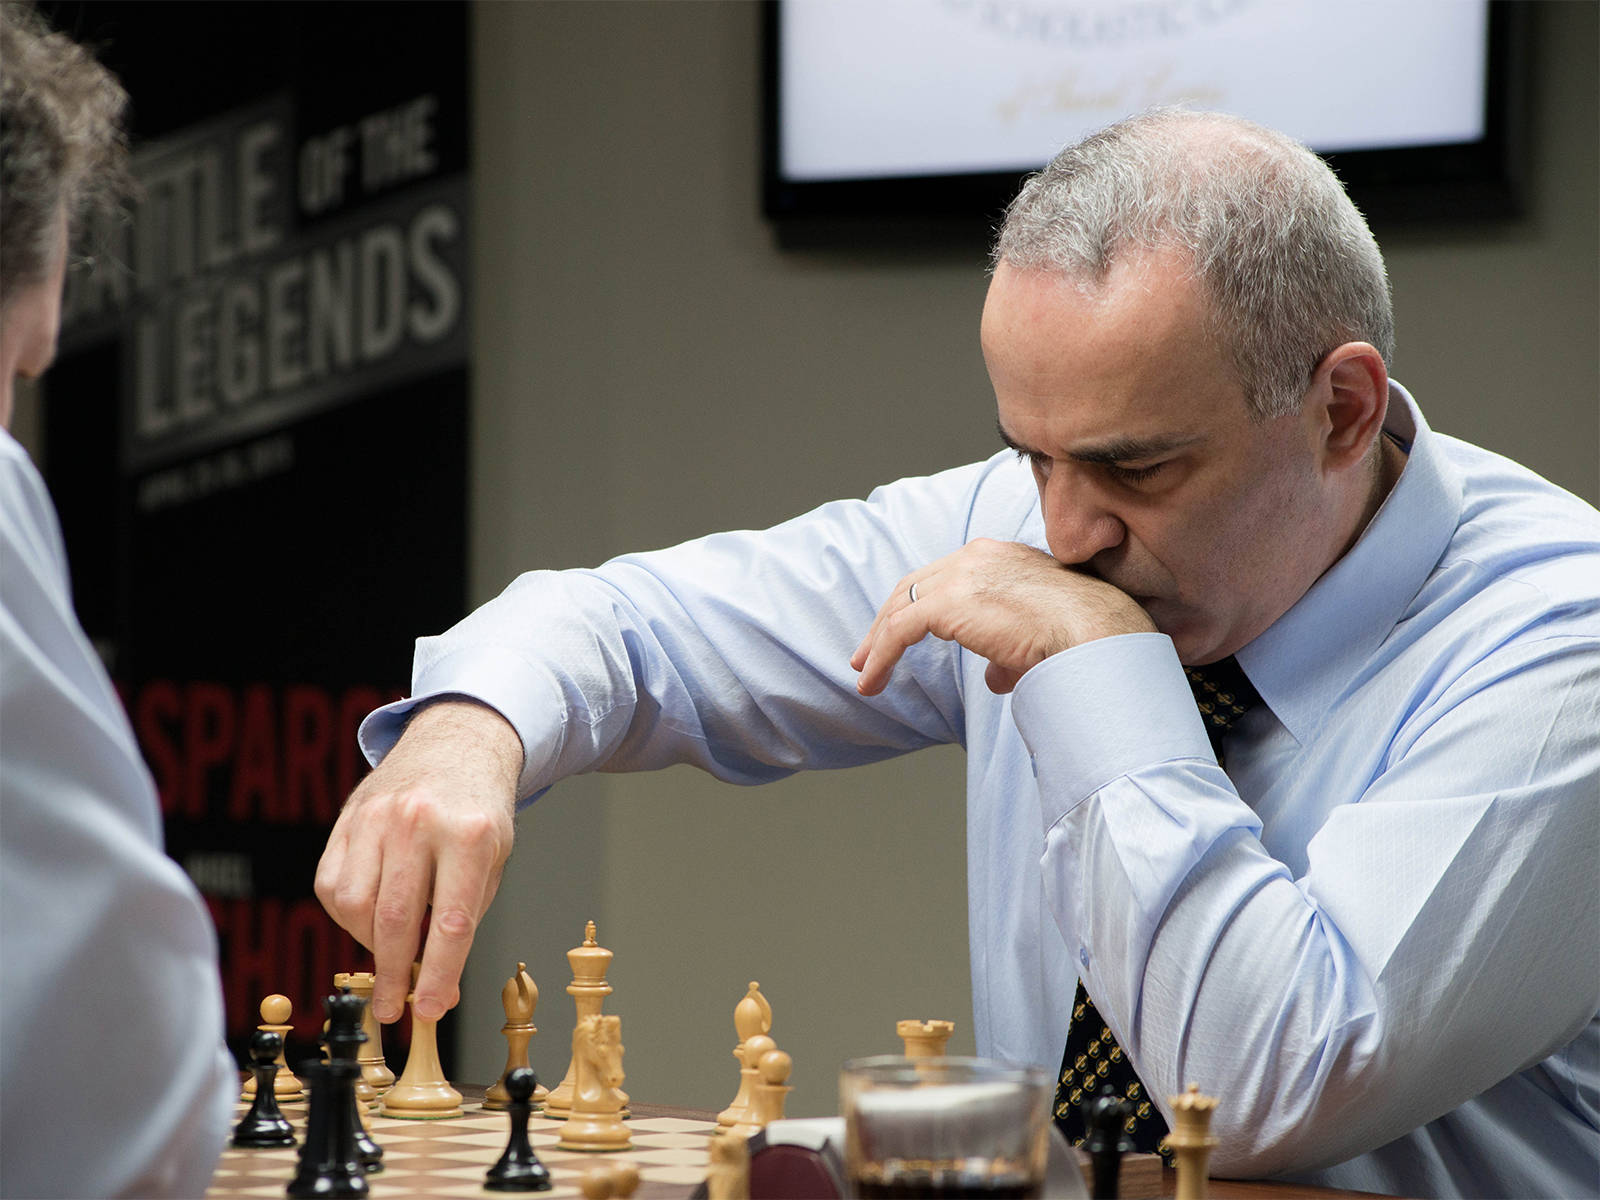 Garry Kasparov, Speaker